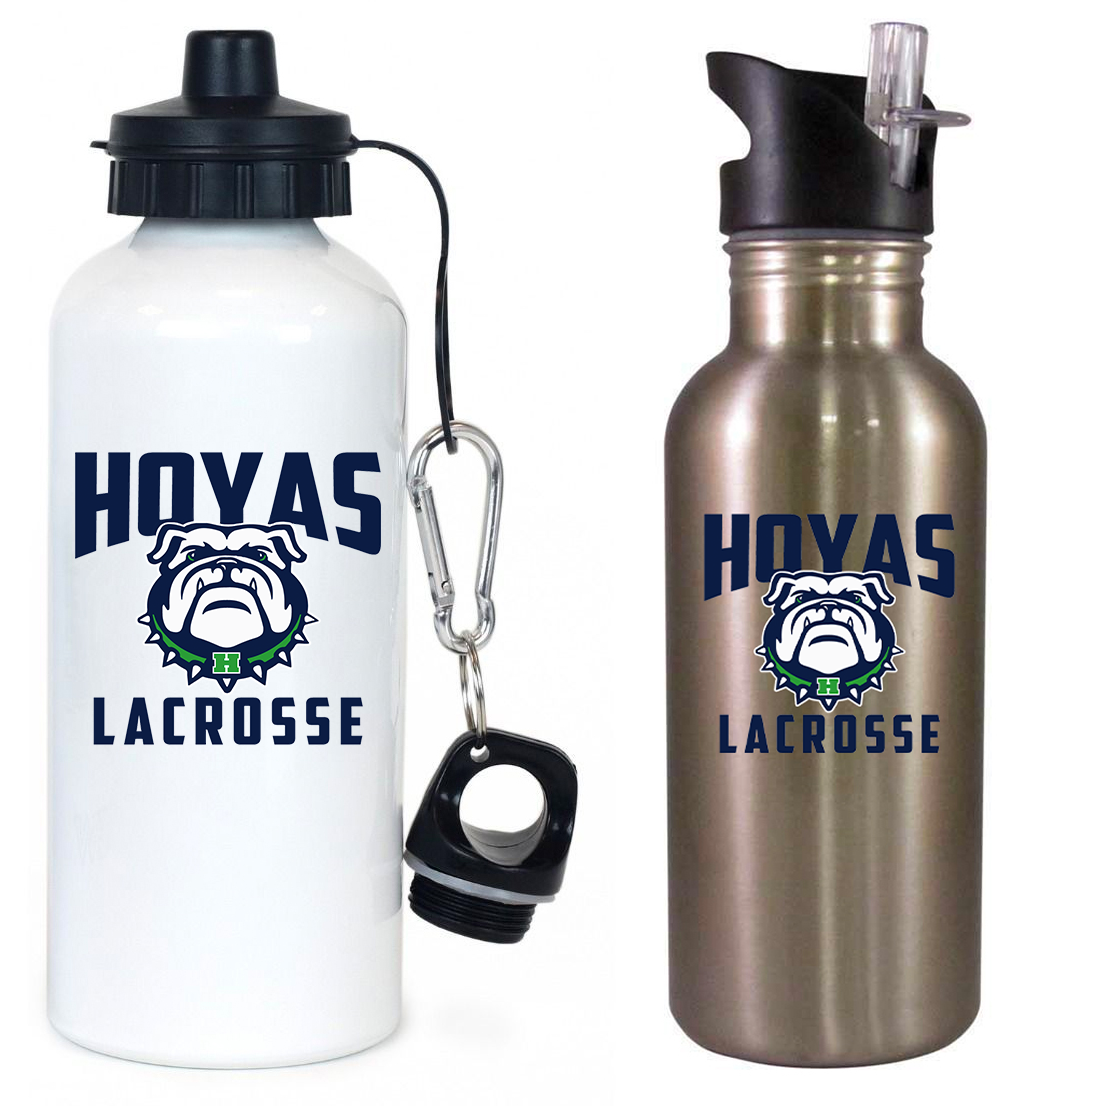 Hoya Lacrosse Team Water Bottle